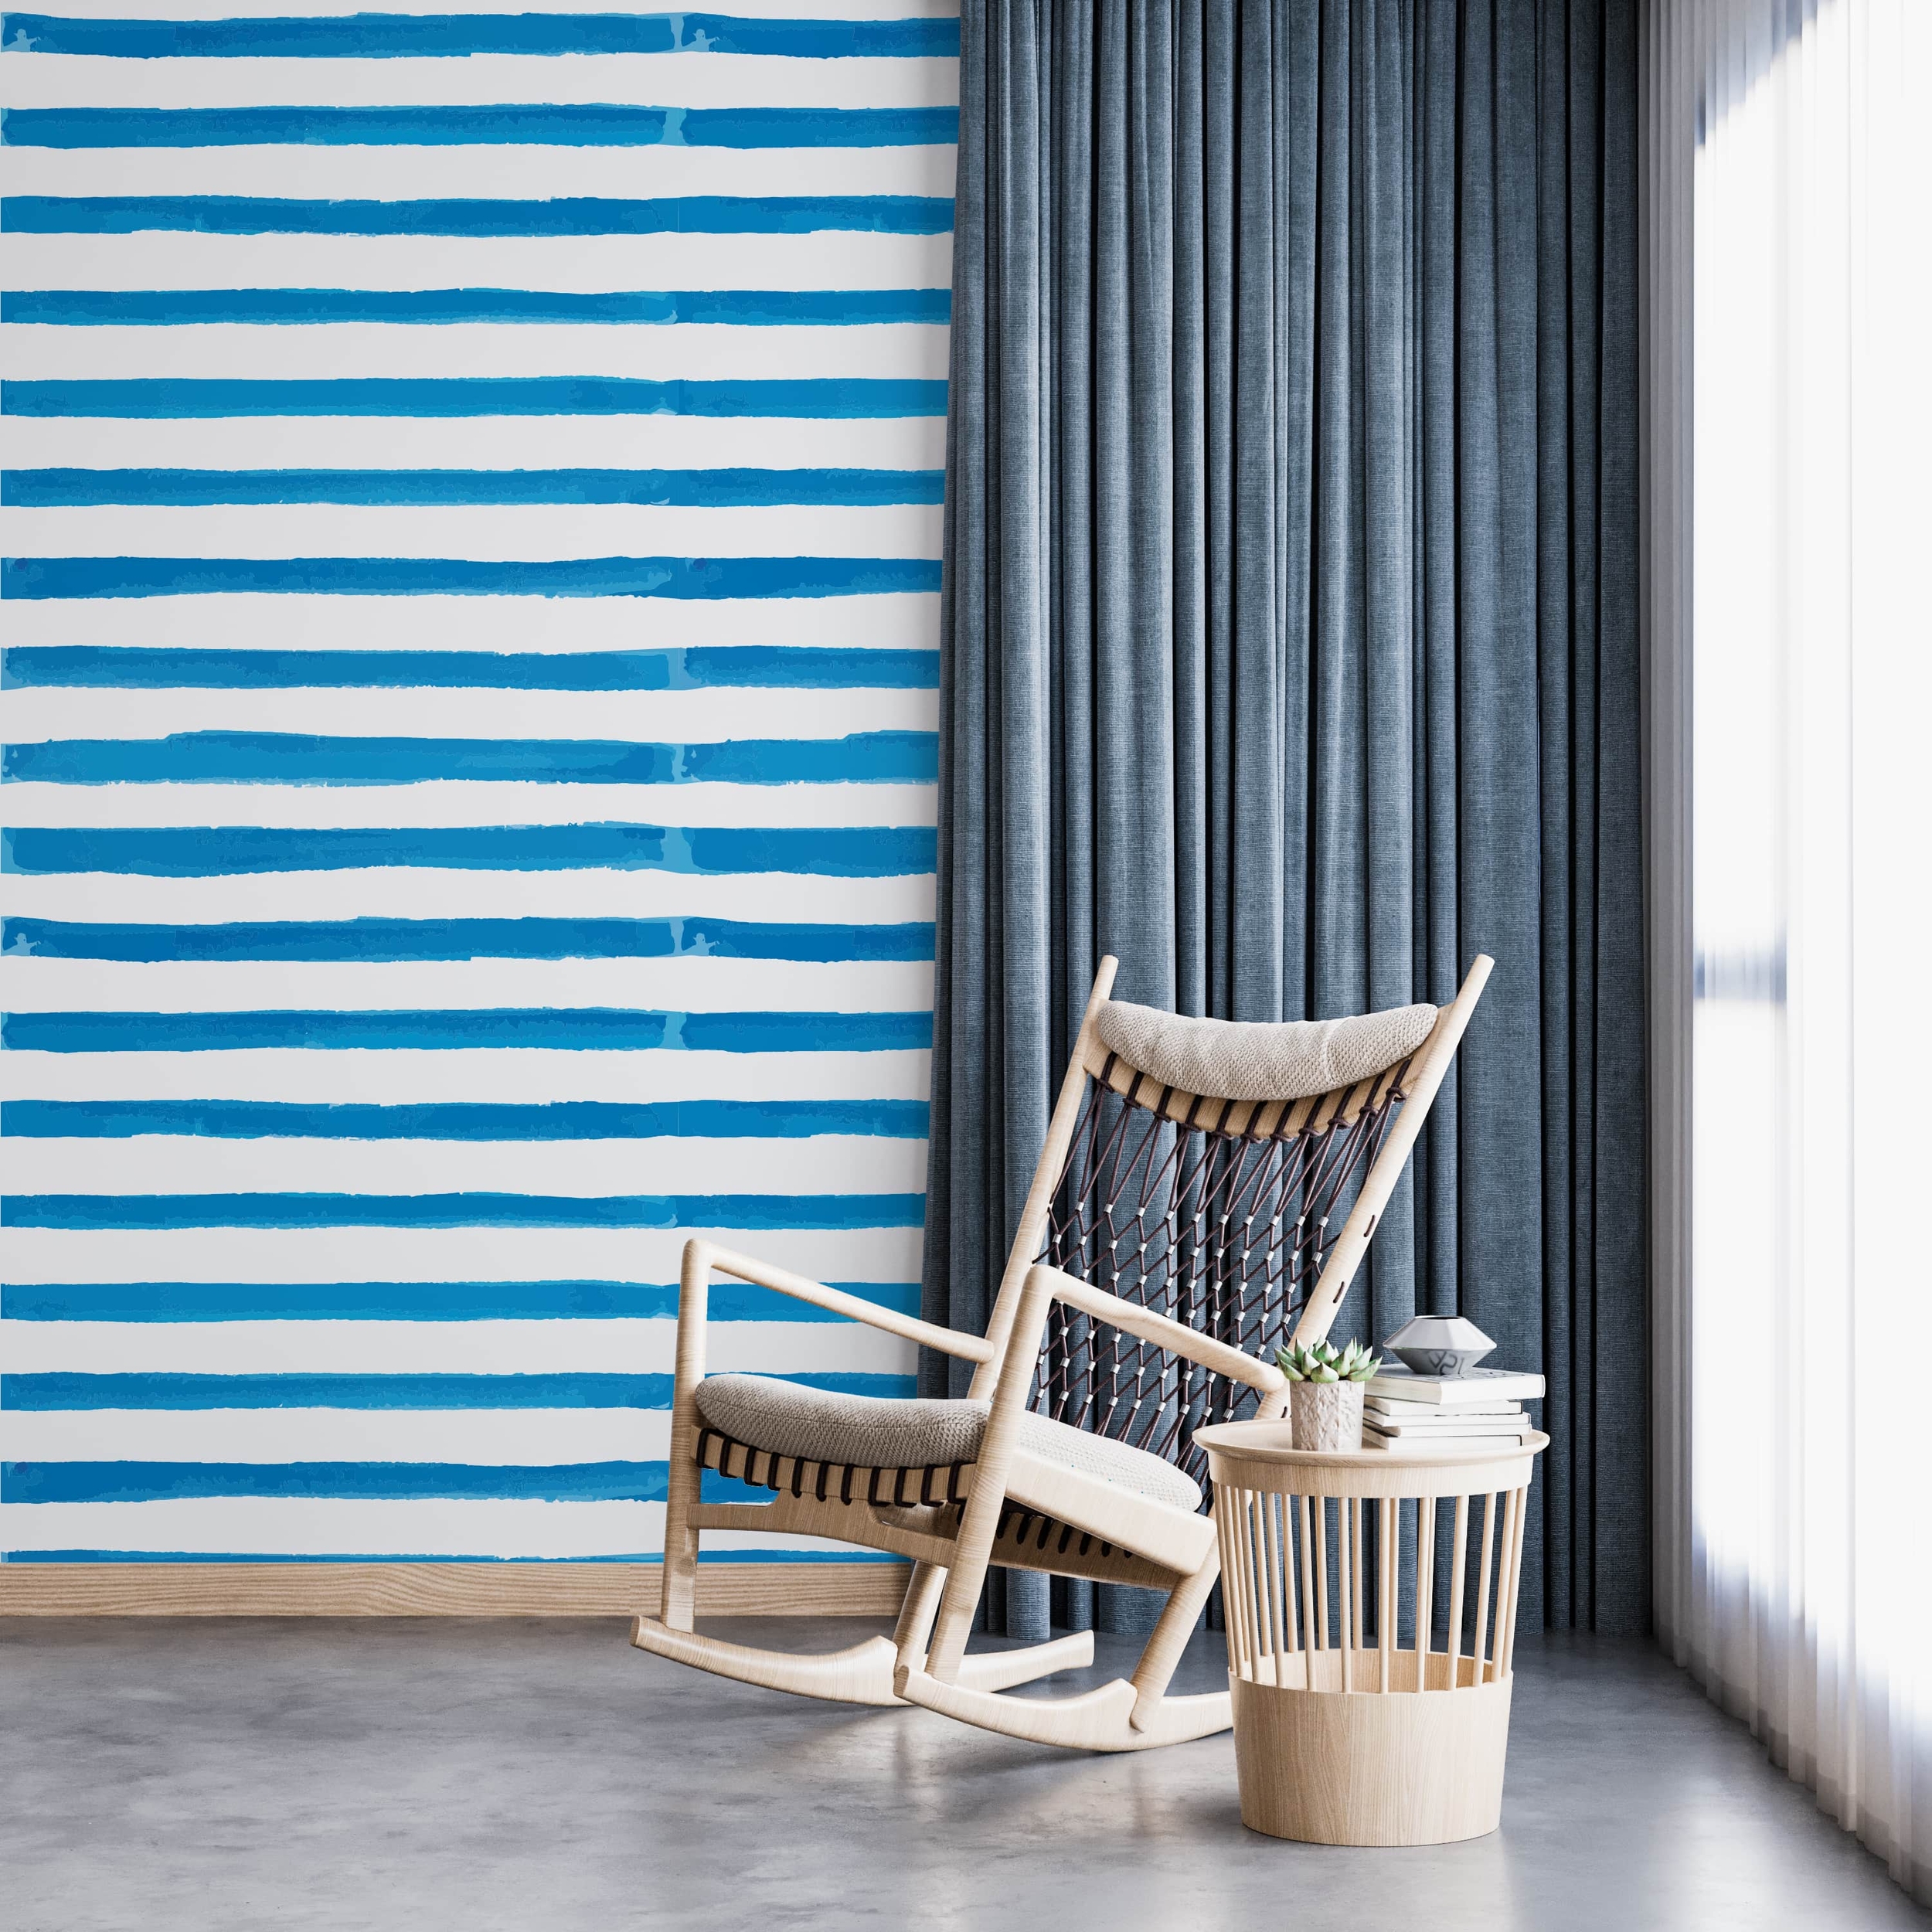 PP68-mur-papier-peint-adhesif-decoratif-revetement-vinyle-motifs-rayures-verticale-peint-à-l’aquarelle-bleu-renovation-meuble-mur-min